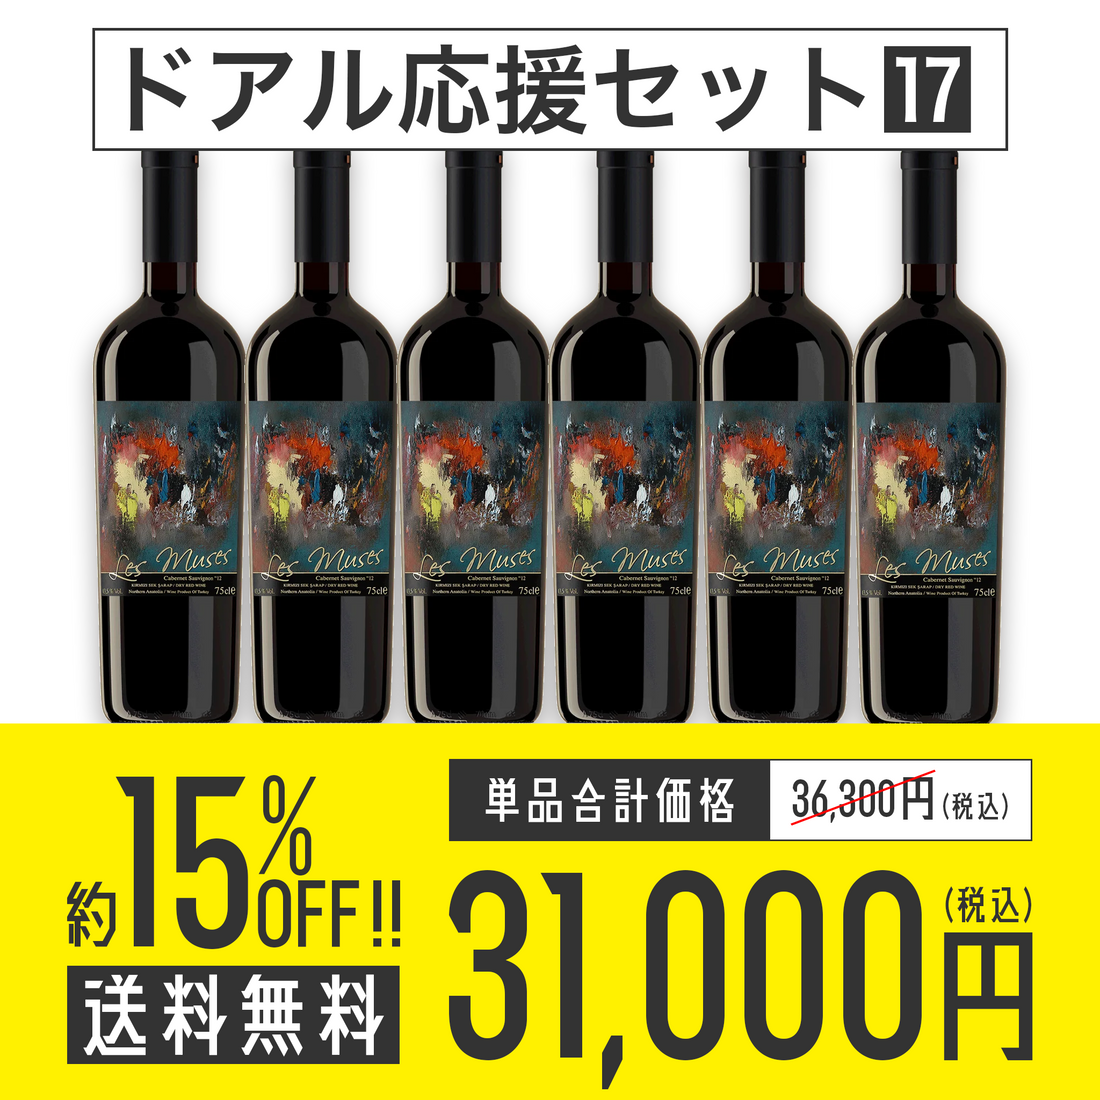 【送料無料】ドアル応援セット No.17 Diren Wine レ・ミューズ 赤ワイン6本セット